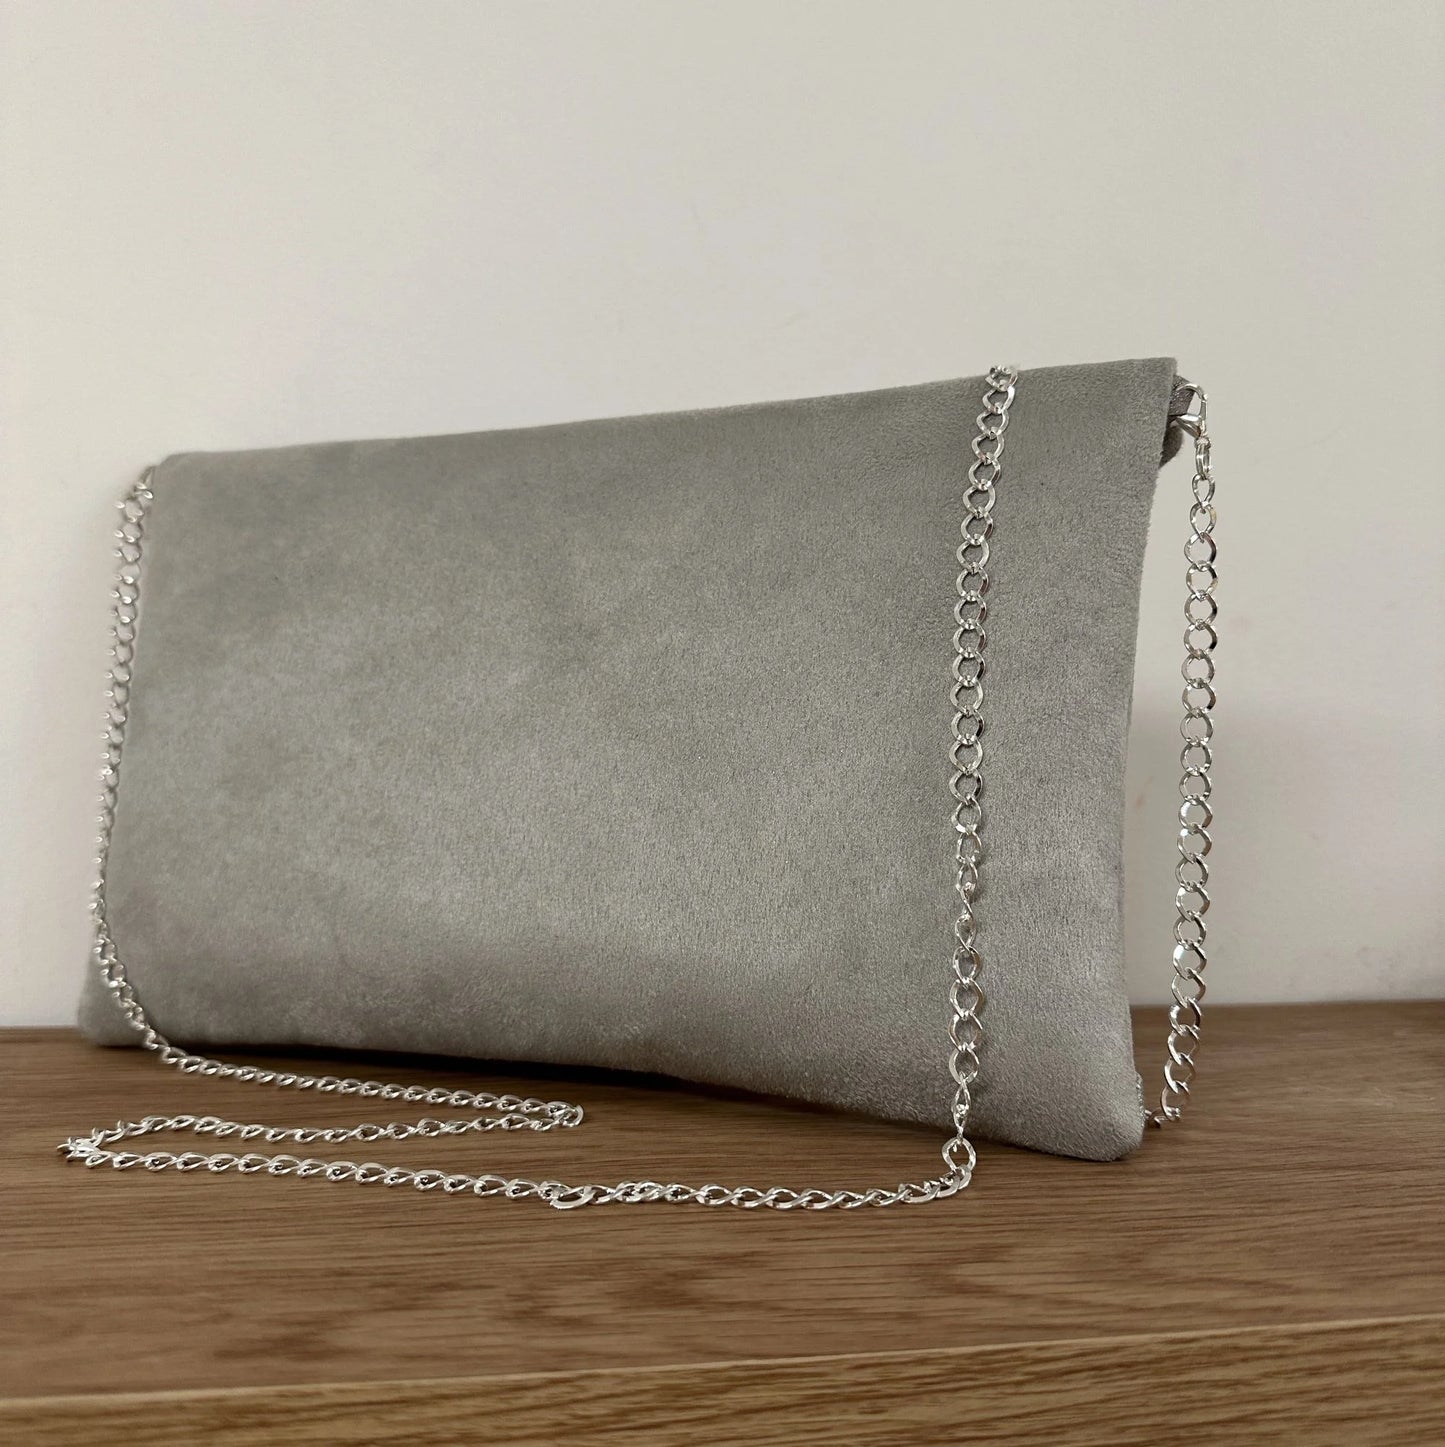 Vue de dos du sac pochette Isa gris perle à paillettes argentées.